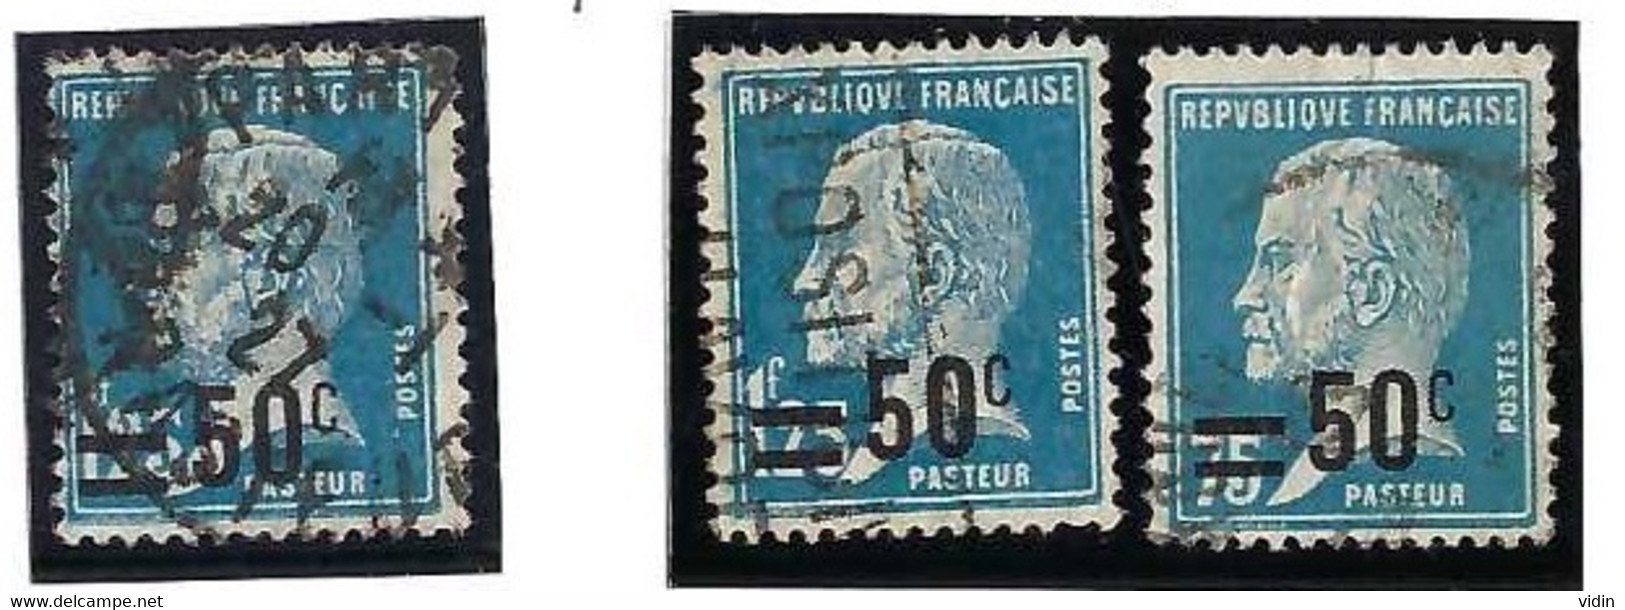 FRANCE Lot de timbres à saisir !